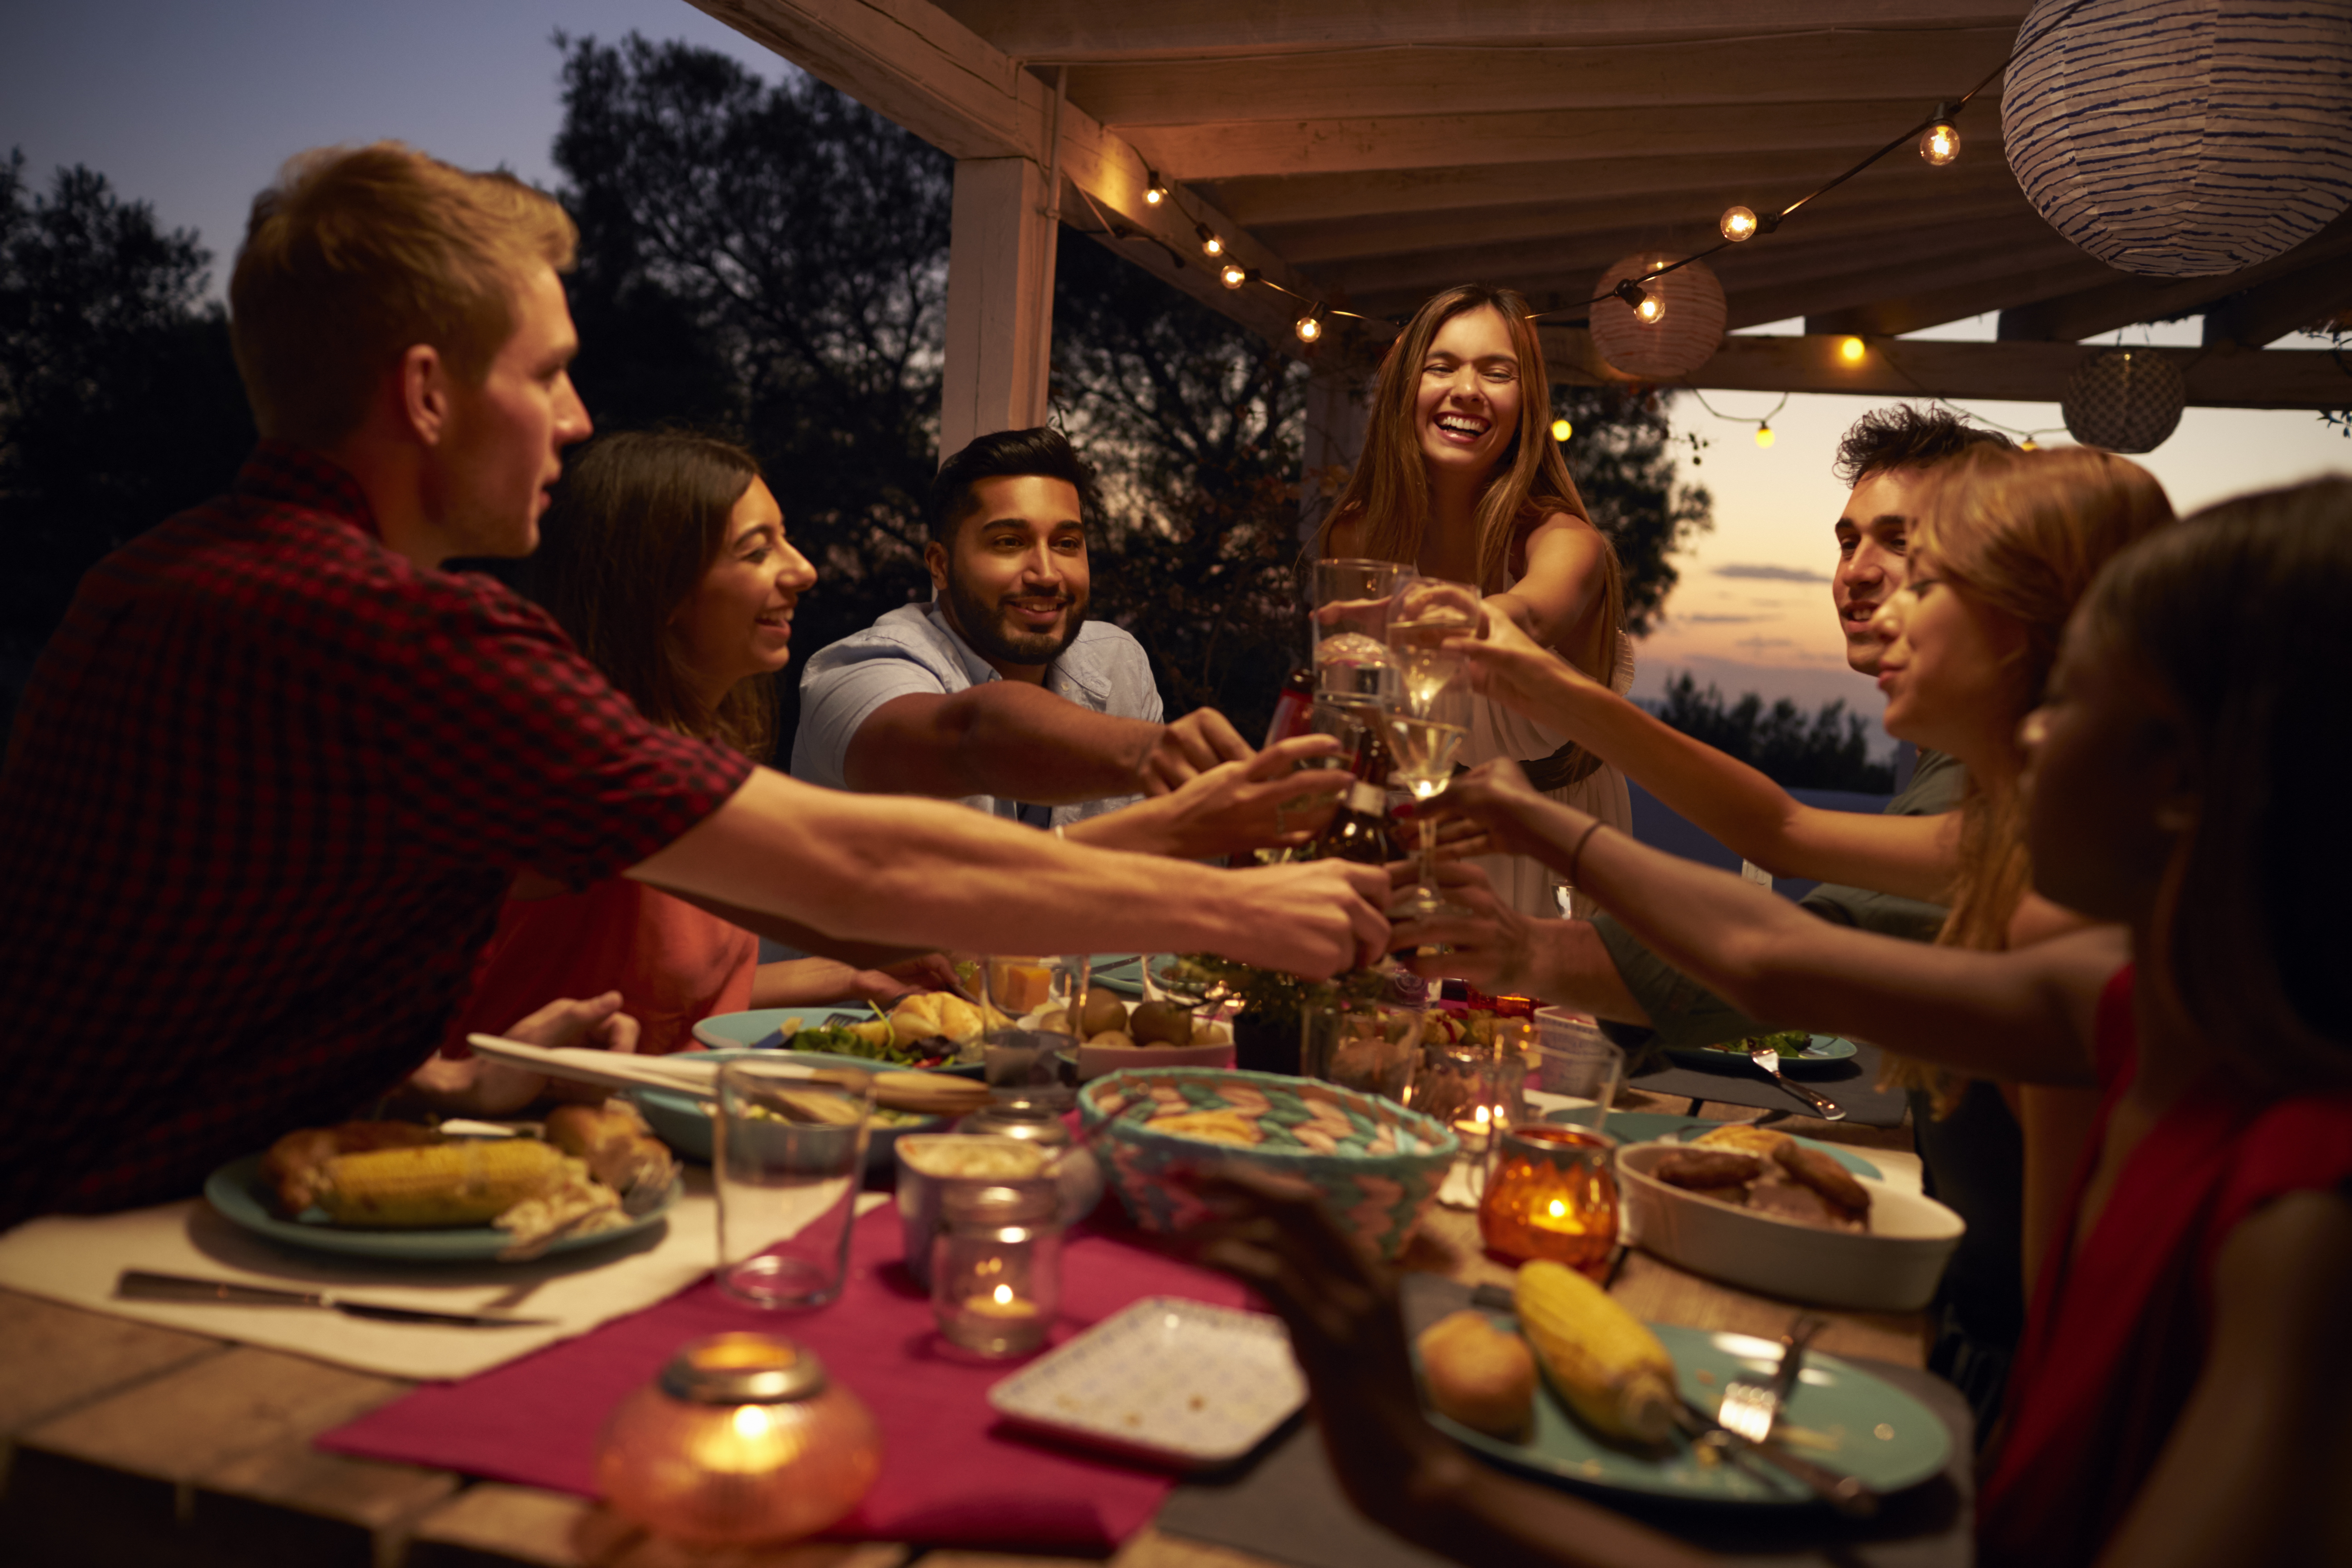 Un groupe d'amis et de membres de la famille photographiés en train de lever leurs verres pour porter un toast lors d'une fête | Source : Shutterstock